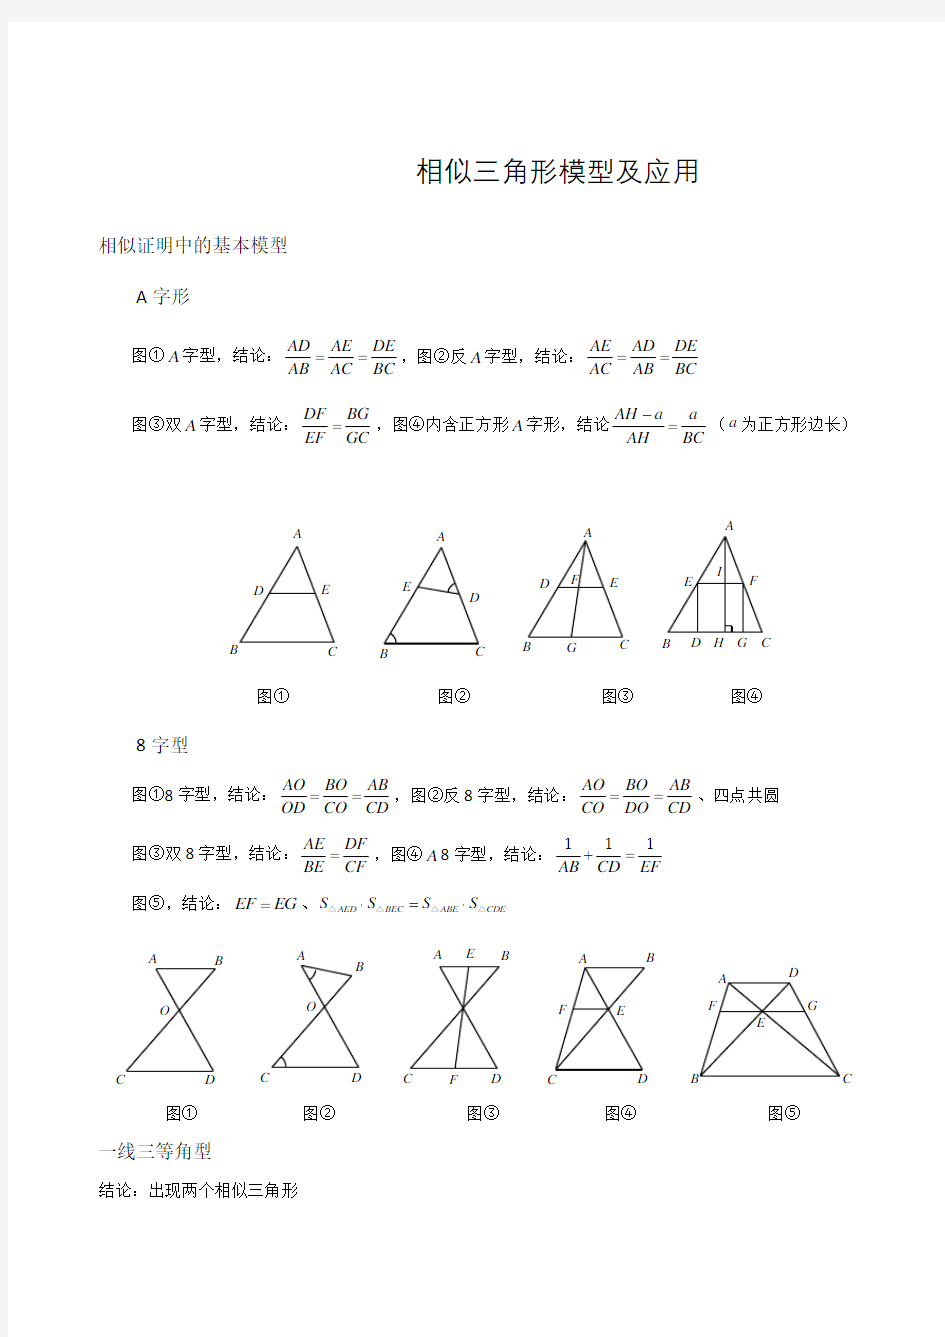 相似三角形常用模型及应用